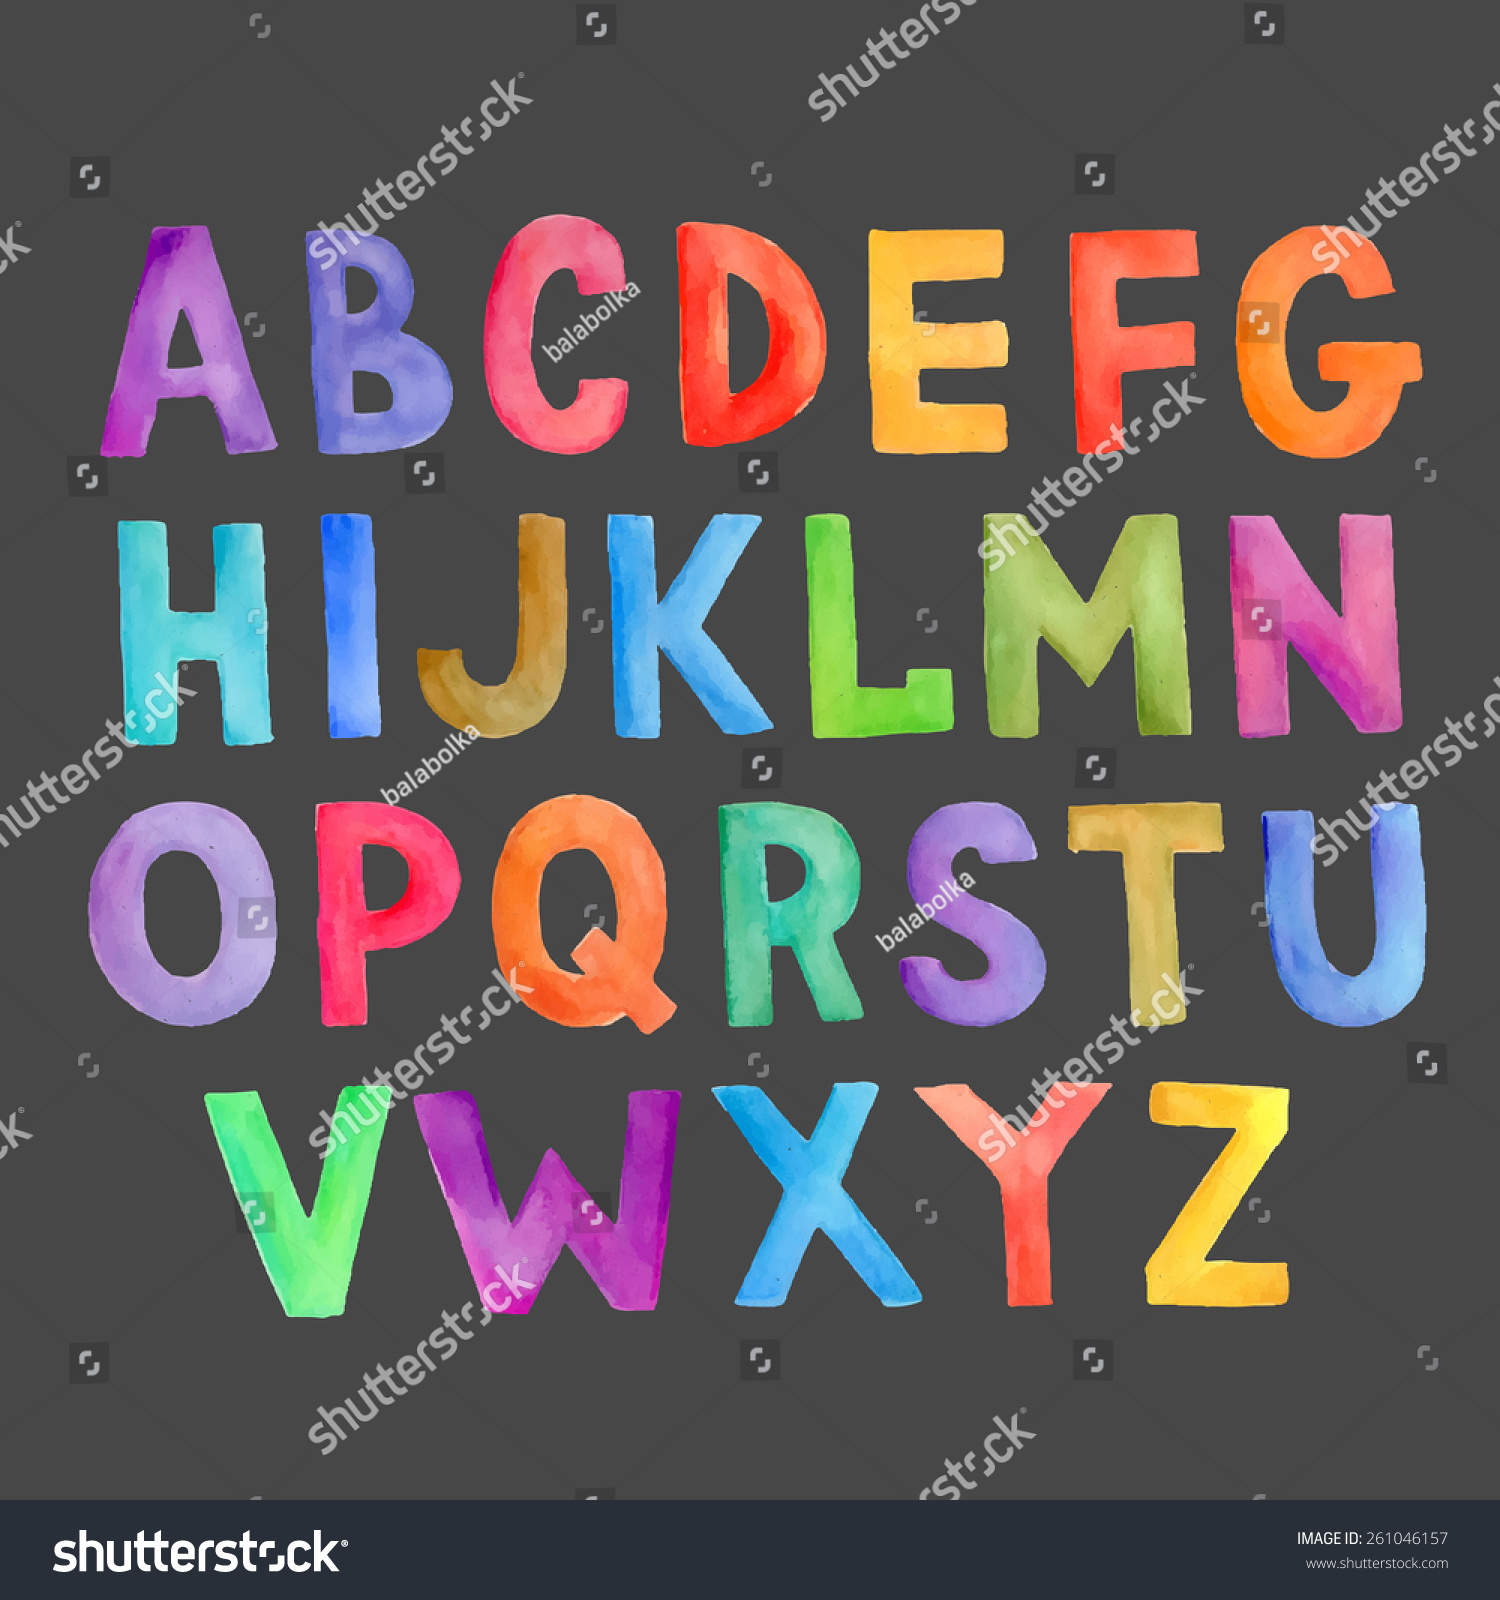 Watercolor Colorful Vector Handwritten Alphabet - 261046157 : Shutterstock